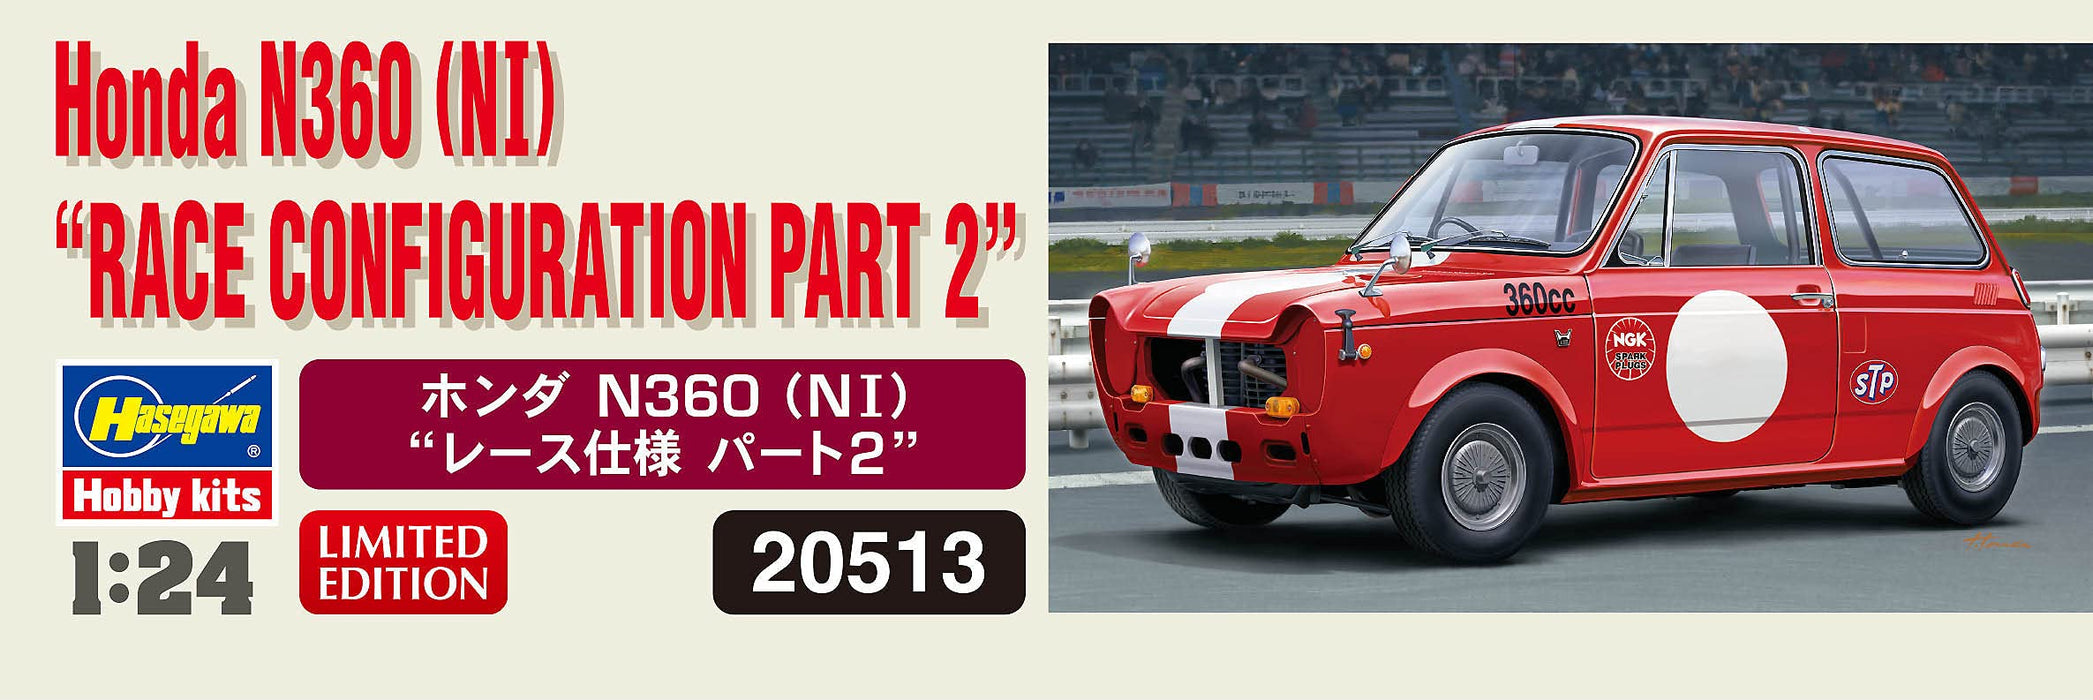 Hasegawa 1/24 Honda N360(Ni) modèle de course Part2 modèles de voitures classiques japonaises